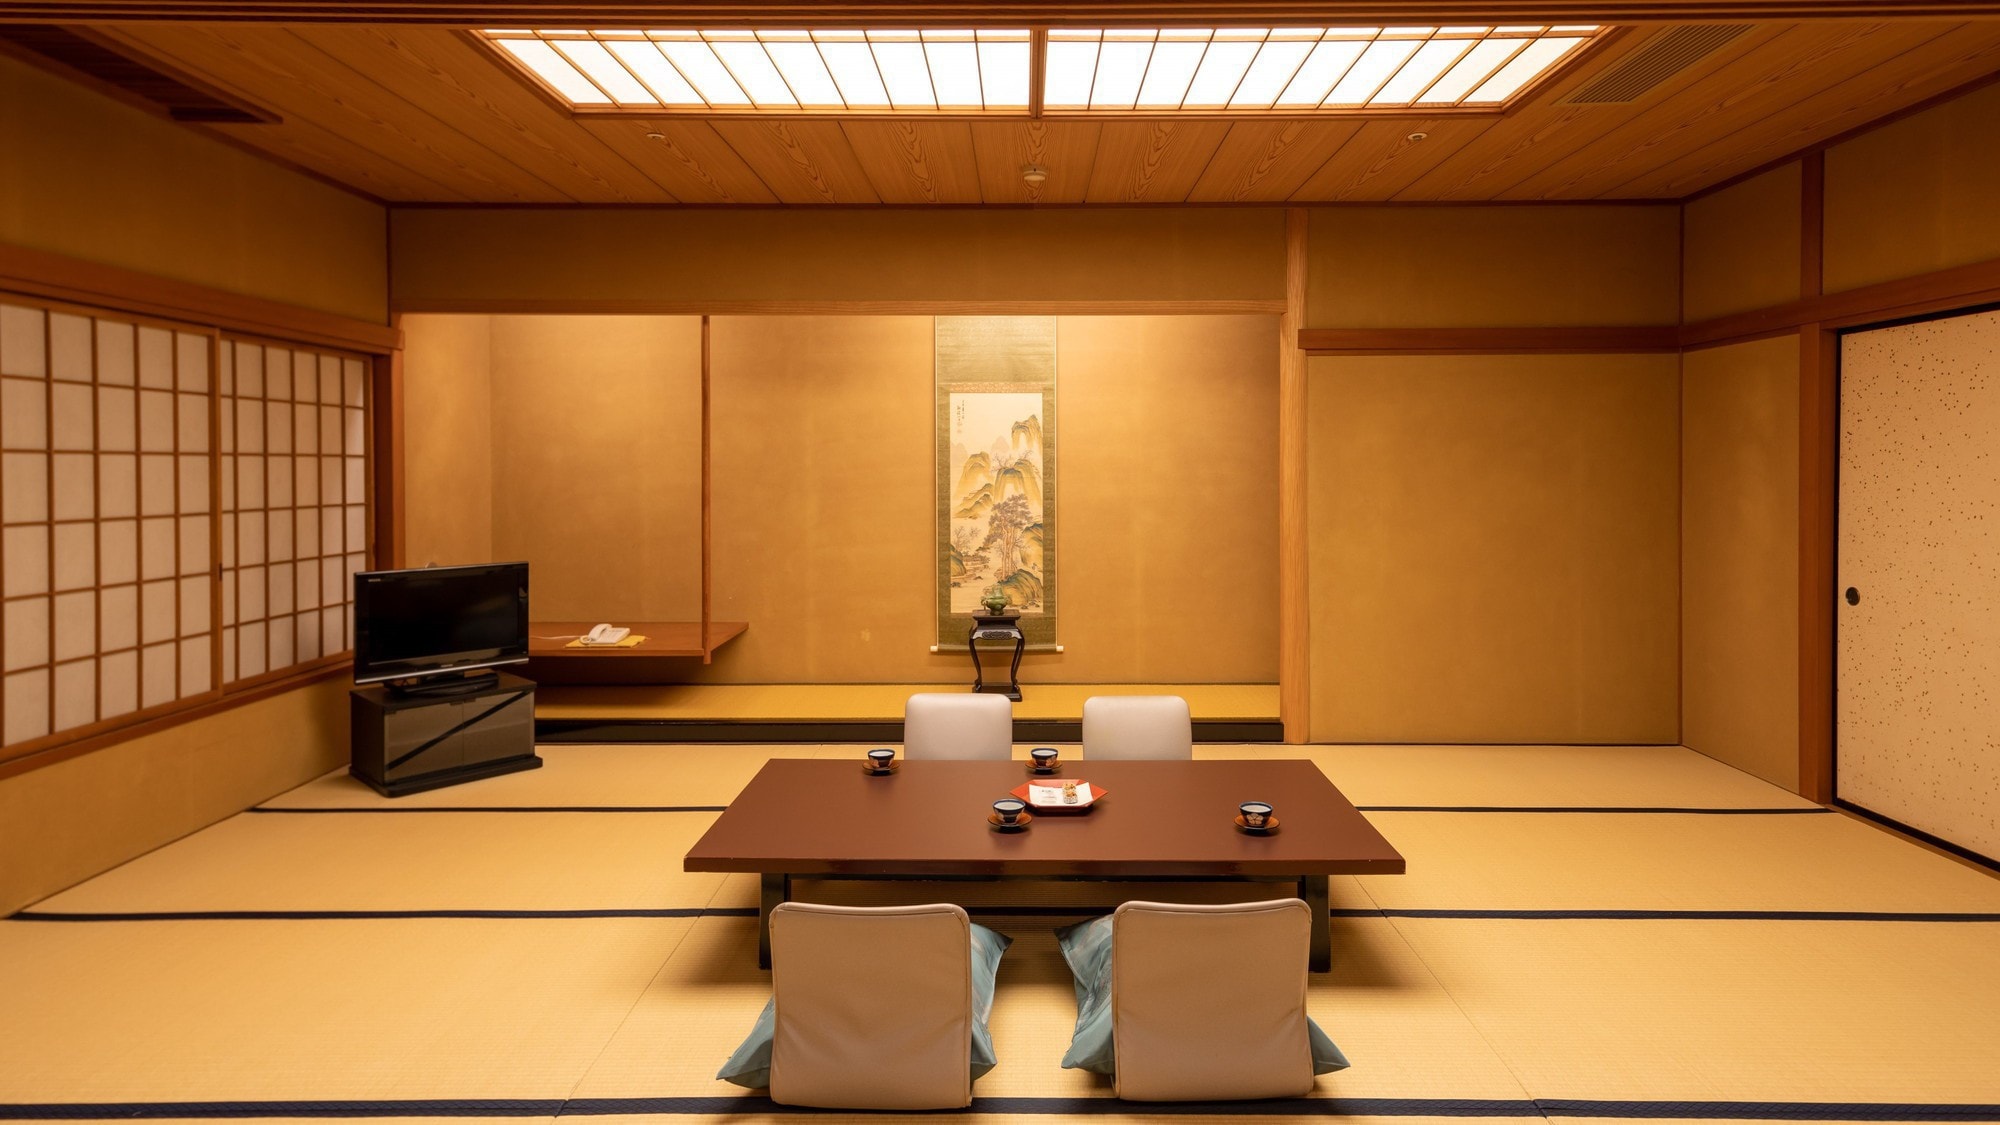 [ปลอดบุหรี่] อาคารหลัก / ห้องสไตล์ญี่ปุ่นกว้างขวาง / มีห้องน้ำ 2 ห้องเพื่อไม่ให้ไม่สะดวกแม้แต่กลุ่มใหญ่♪